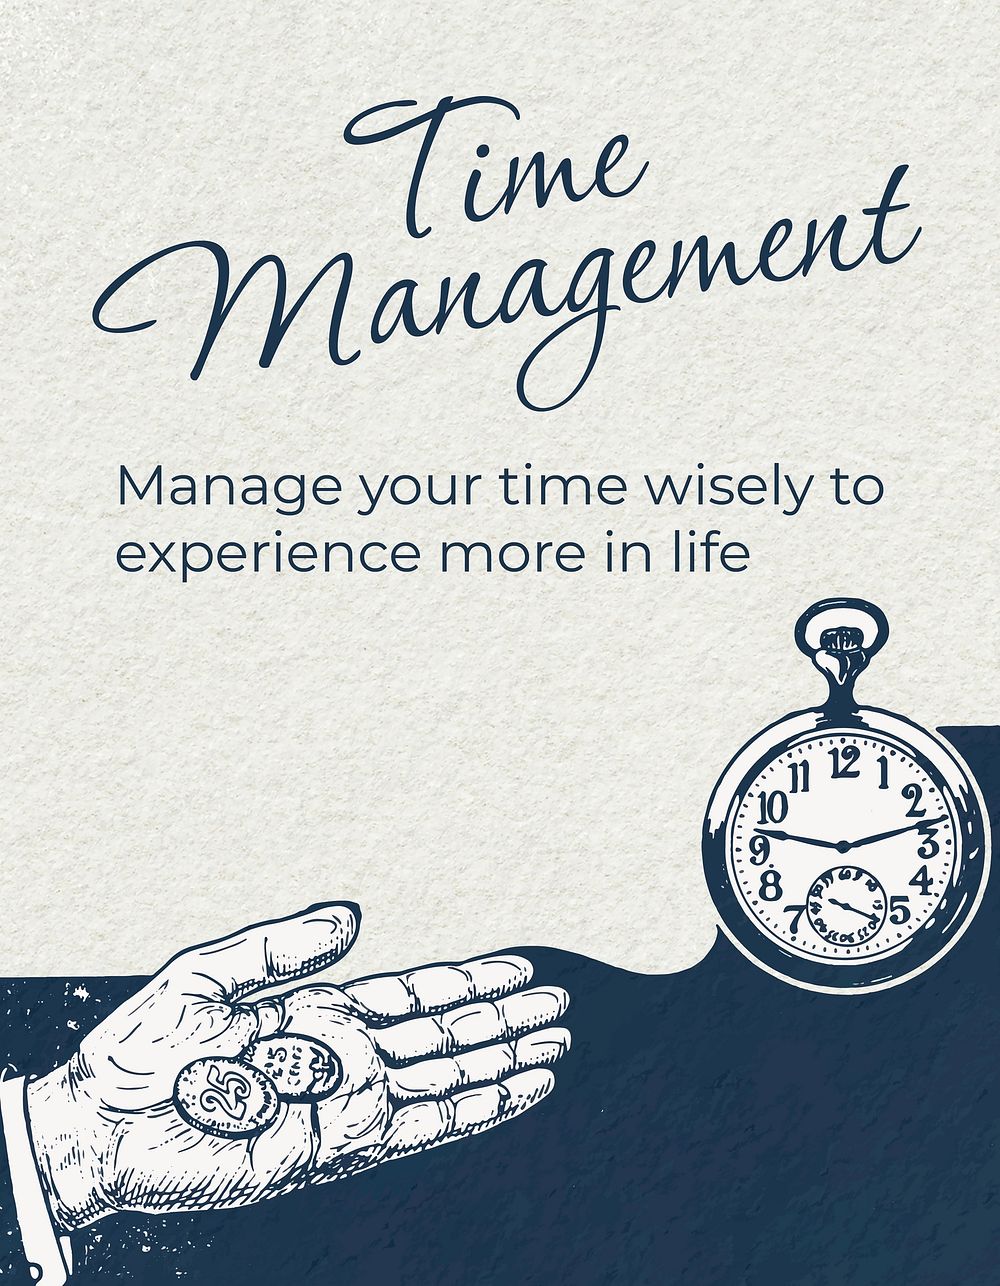 Time management flyer template, business vintage illustration vector